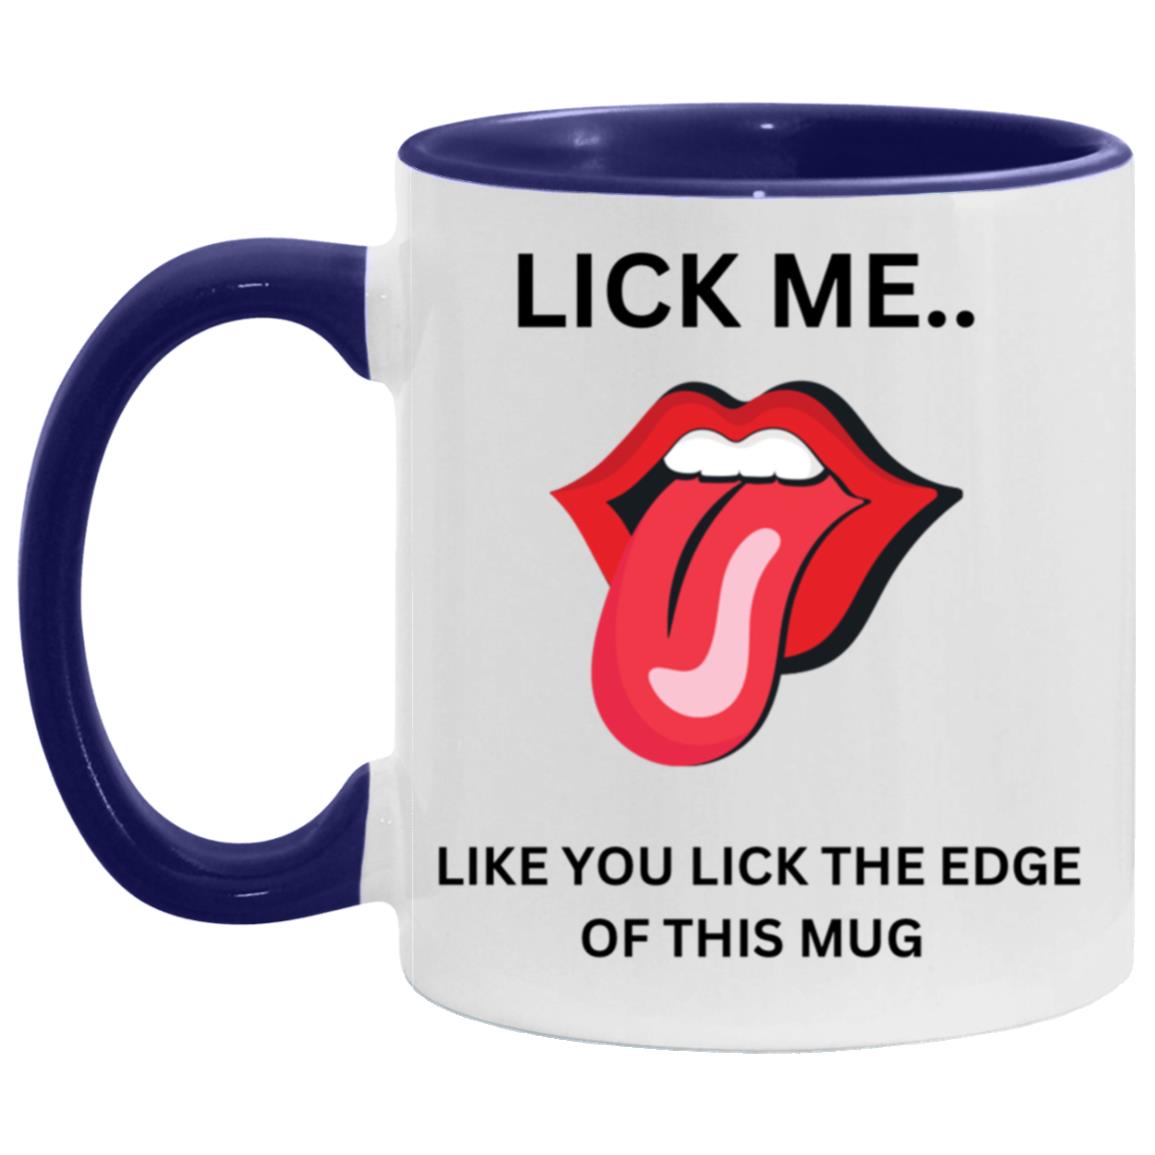 11 oz Coffee Mug - Lick Me